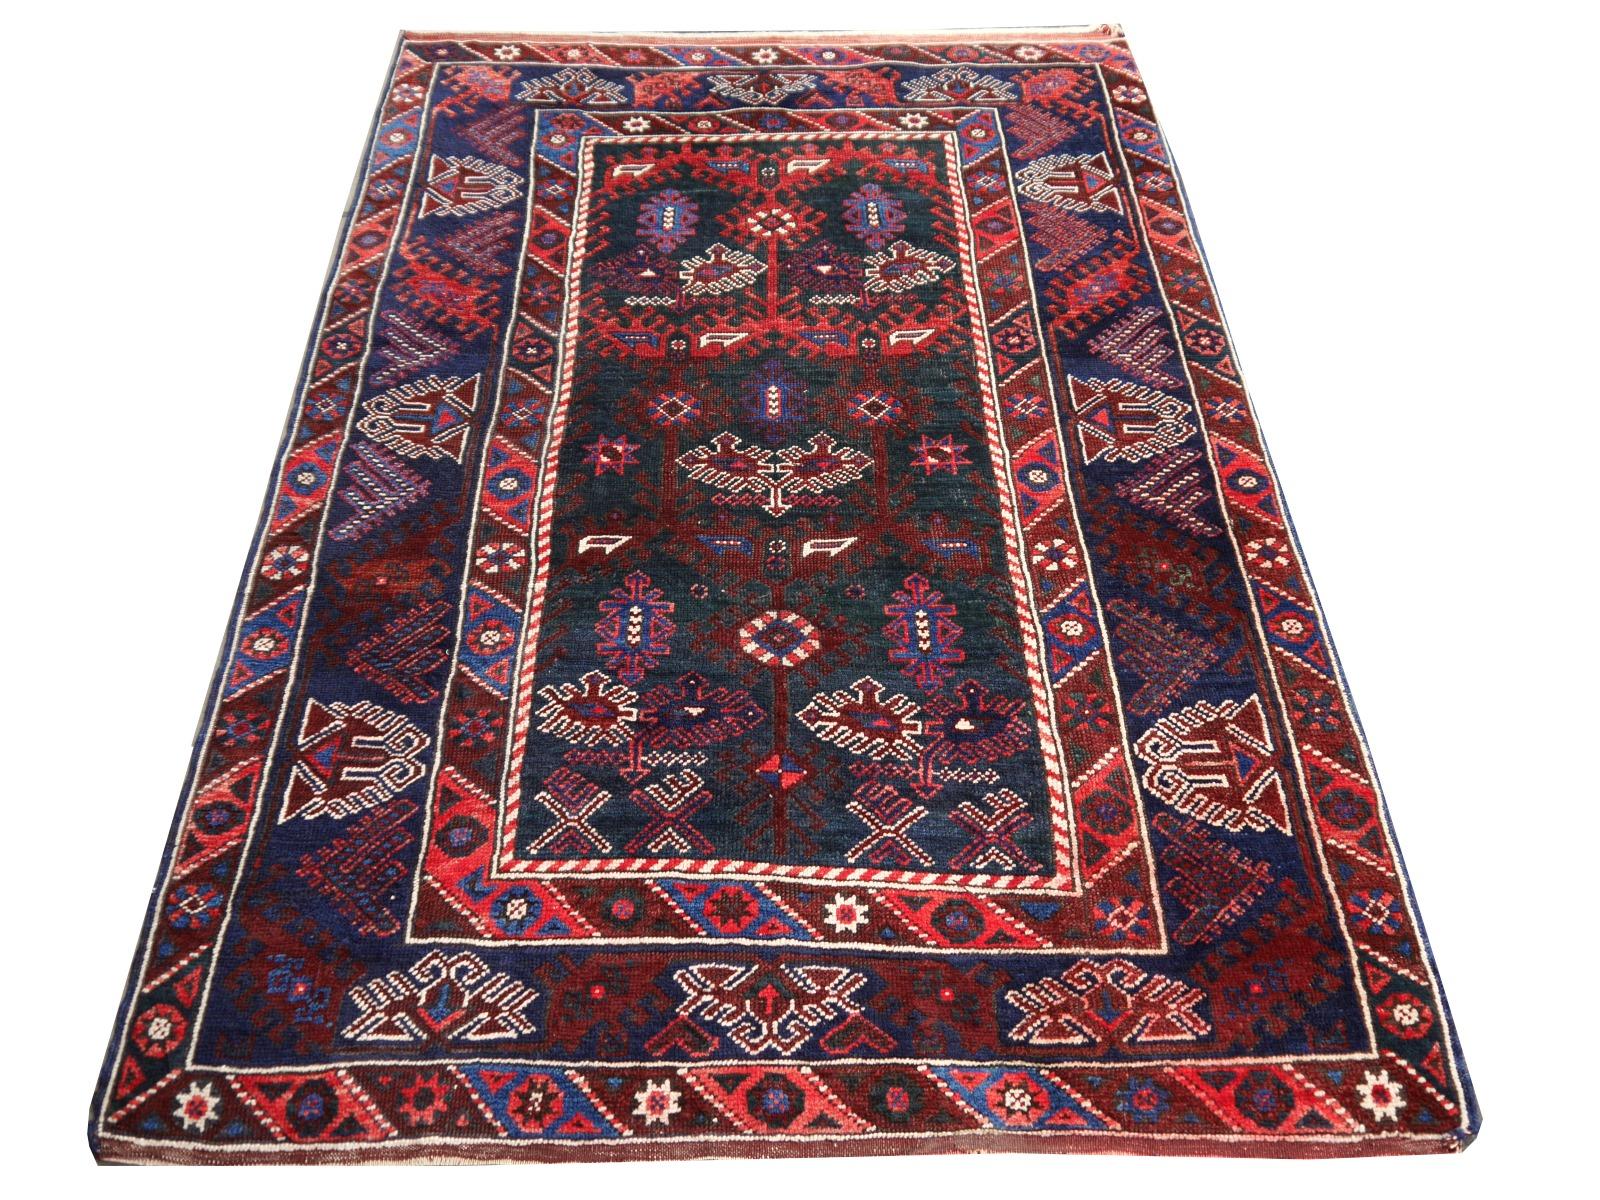 Halbantiker orientalischer Akzentteppich, Teppich oder Matte.

Vintage türkischen Teppich ausgezeichneten Zustand, seltene Farben. Dieser Teppich wurde in dem Dorf Dosemealti handgeknüpft. Er hat ein ungewöhnliches grünes Feld mit blauen und roten